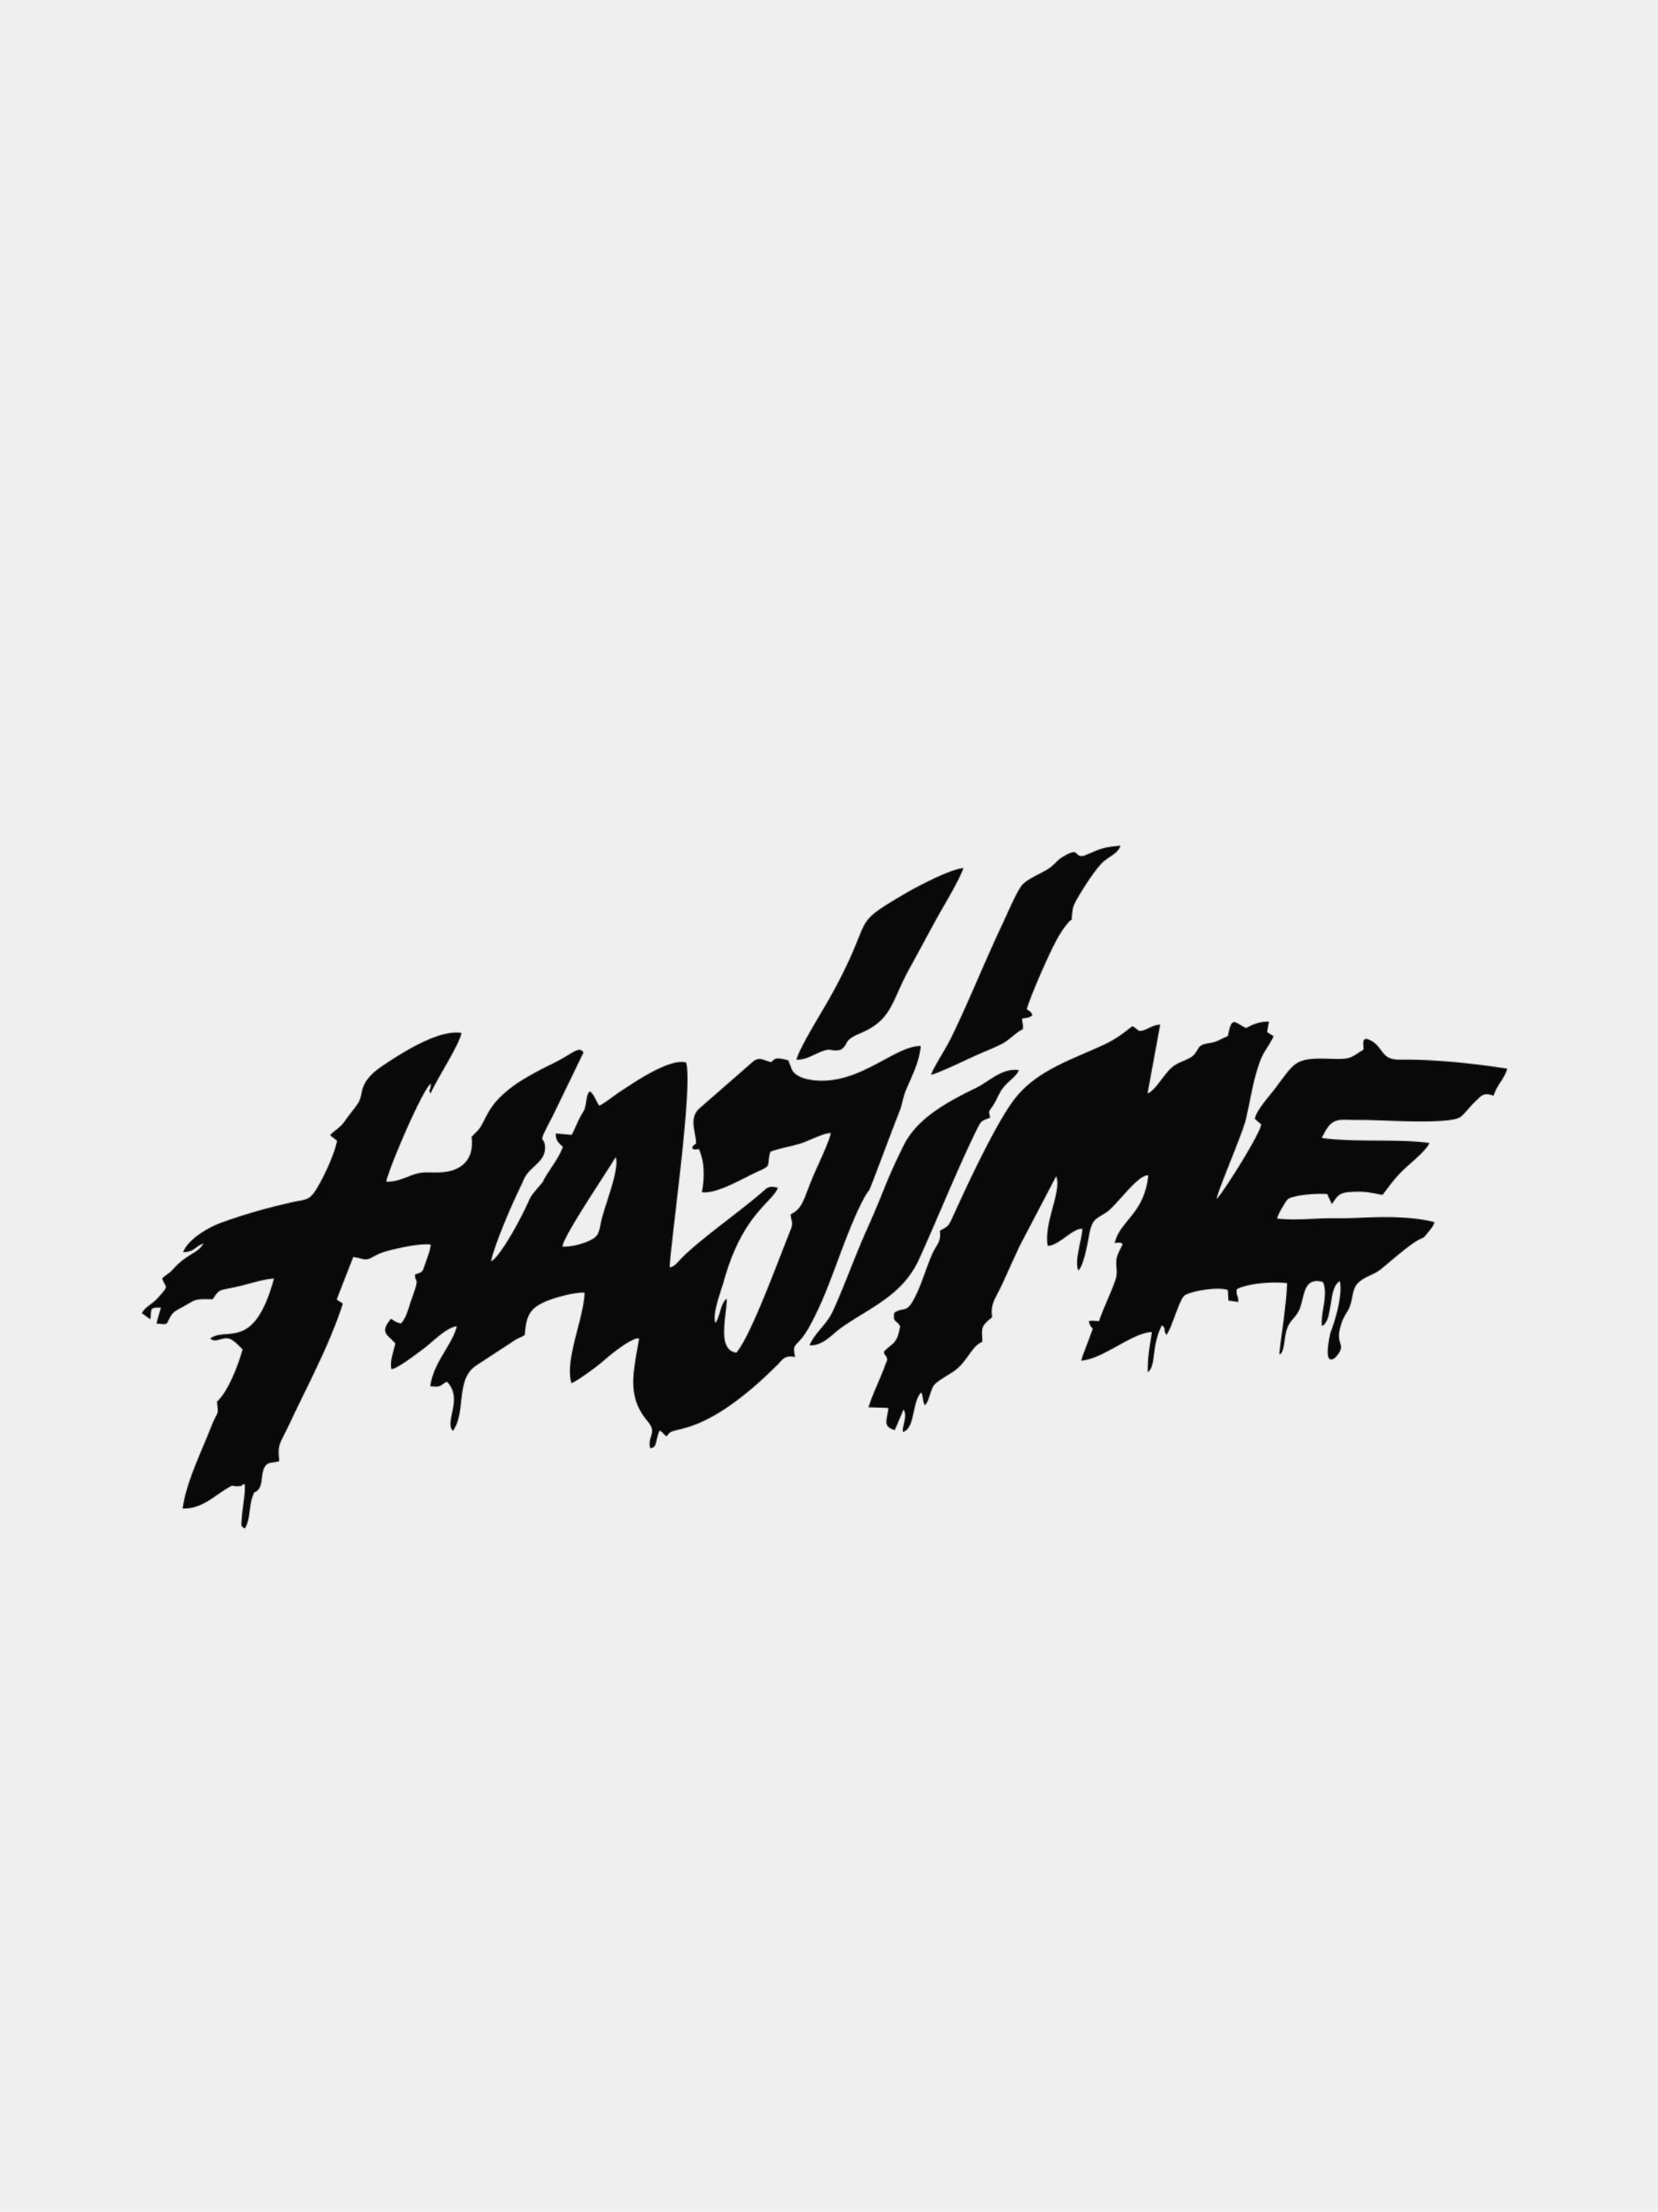 Hajime это. Hajime Miyagi наклейка. Hajime Miyagi Эндшпиль логотип. Наклейка на авто "Hajime". Надпись хаджиме.